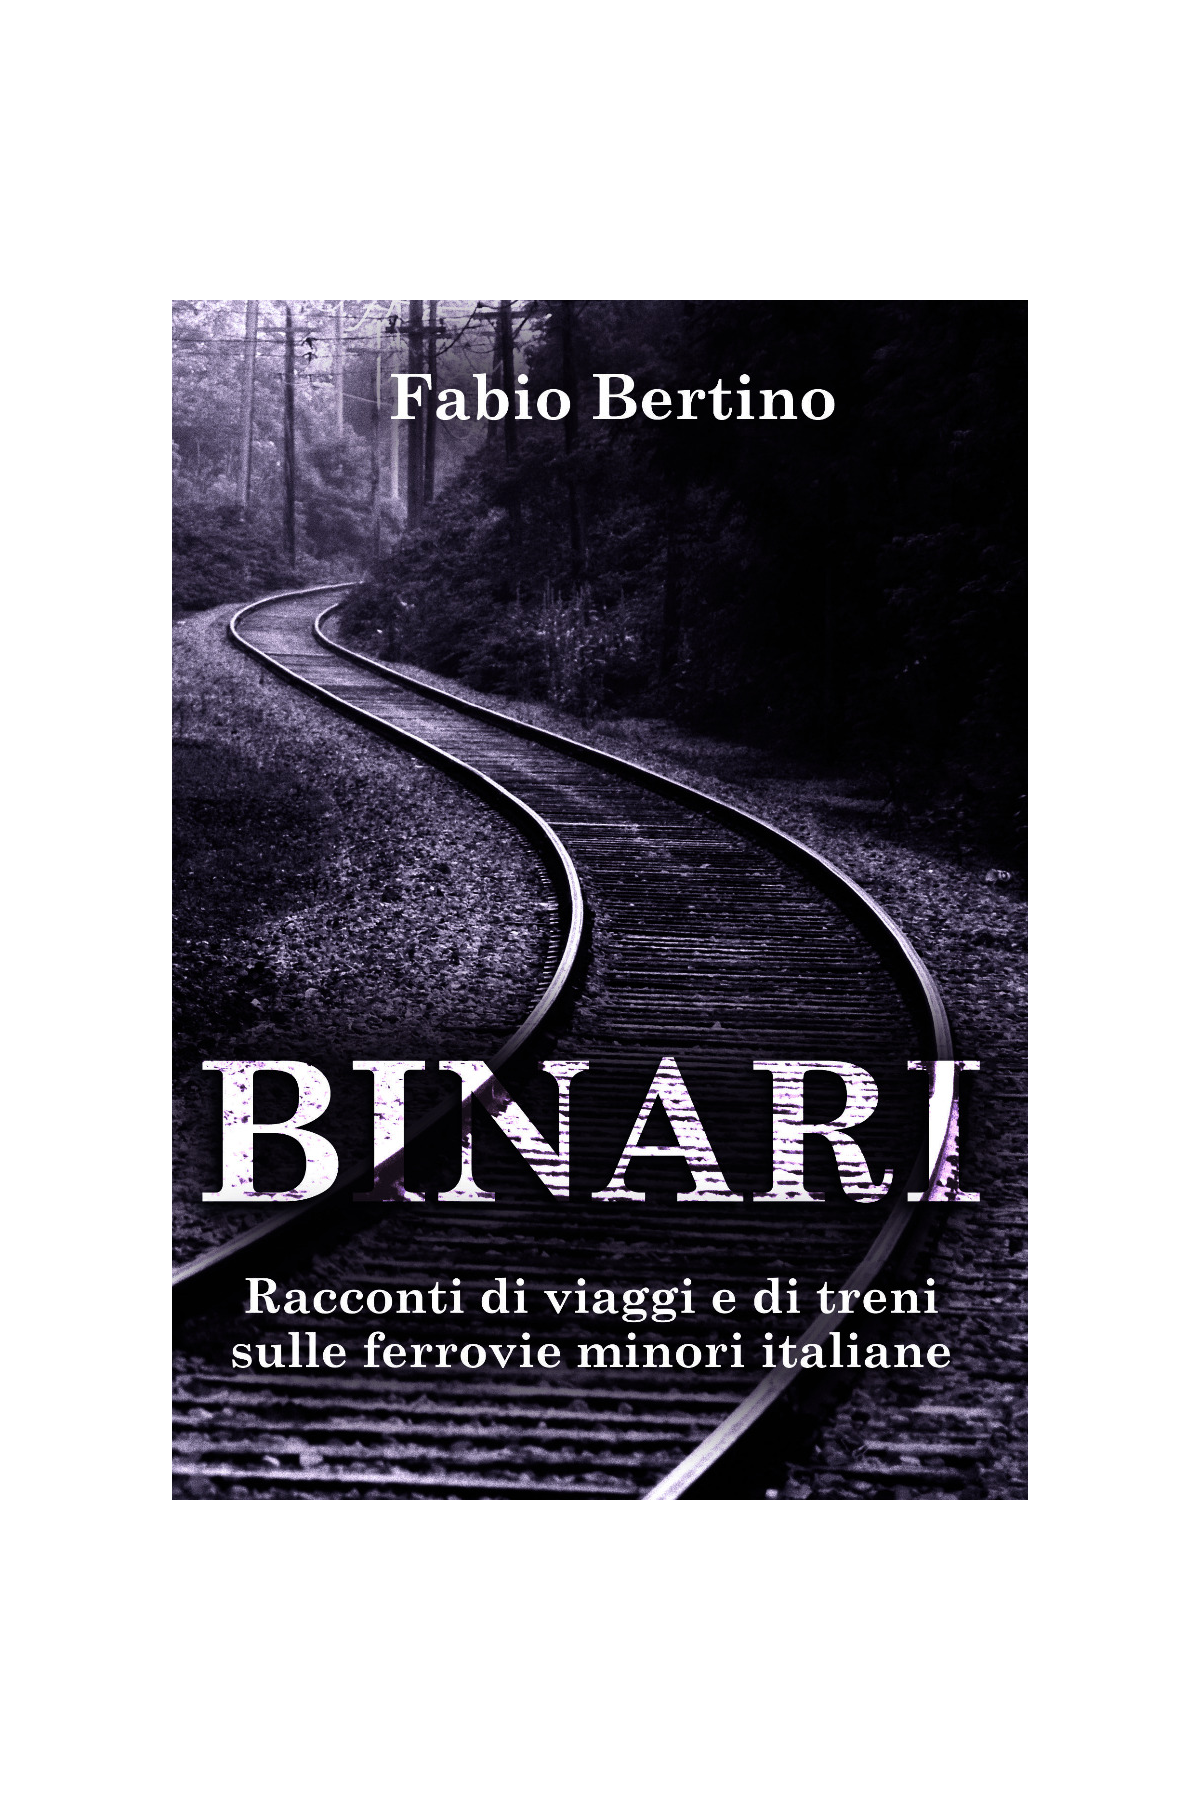 “Binari. Racconti di viaggi e di treni sulle ferrovie minori italiane”. Il nuovo libro di racconti di viaggio di Fabio Bertino.